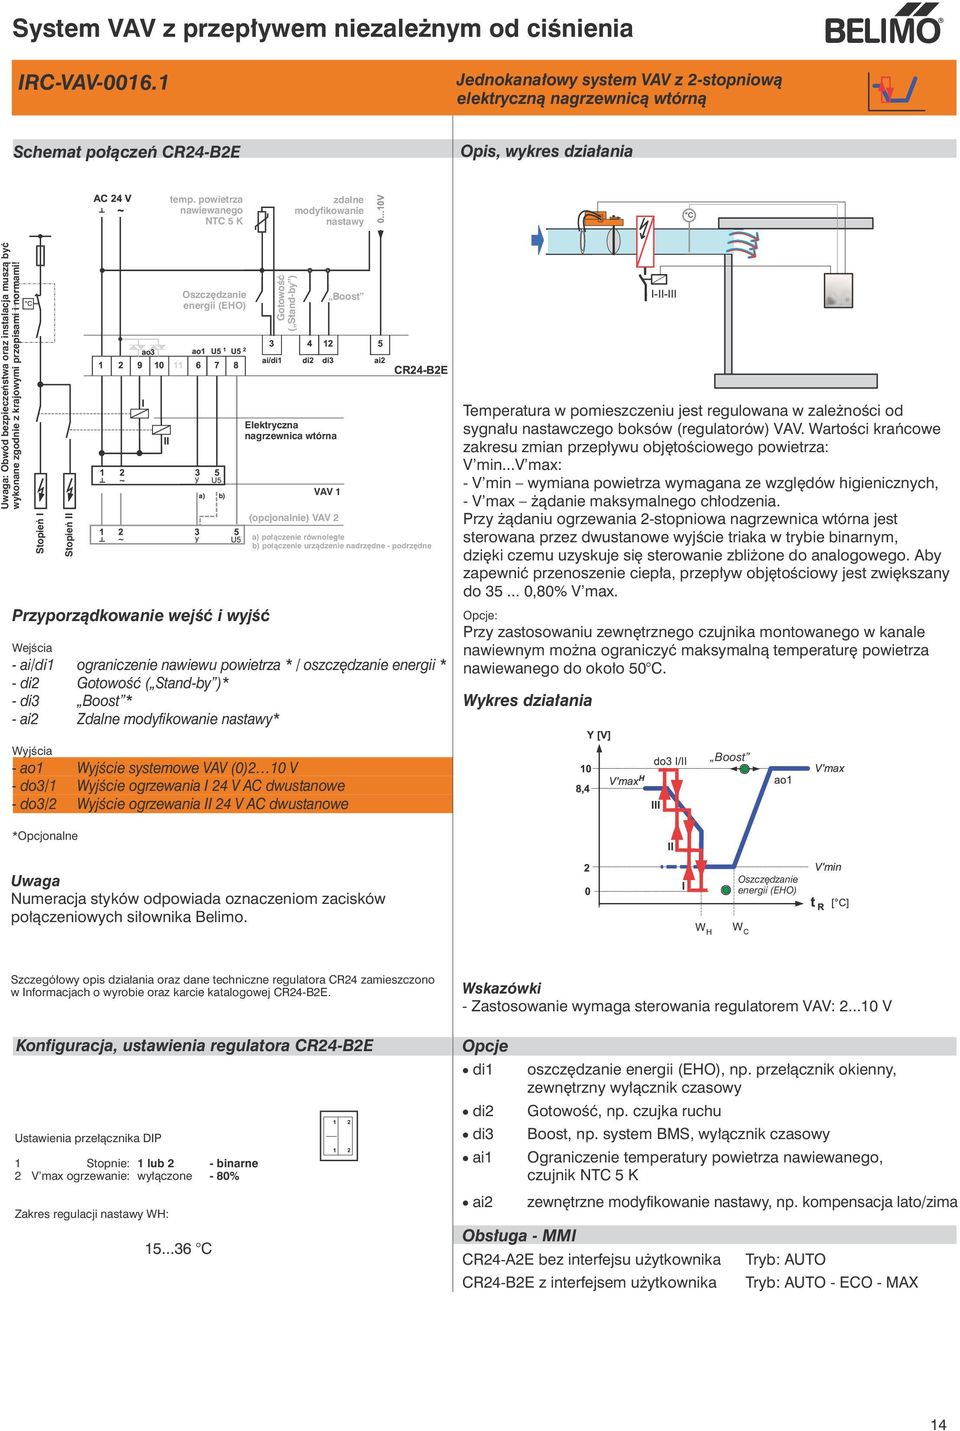 Stopień I Stopień II Elektryczna nagrzewnica wtórna VAV 1 (opcjonalnie) VAV 2 Boost a) połączenie równoległe b) połączenie urządzenie nadrzędne - podrzędne - ai/di1 ograniczenie nawiewu powietrza * /